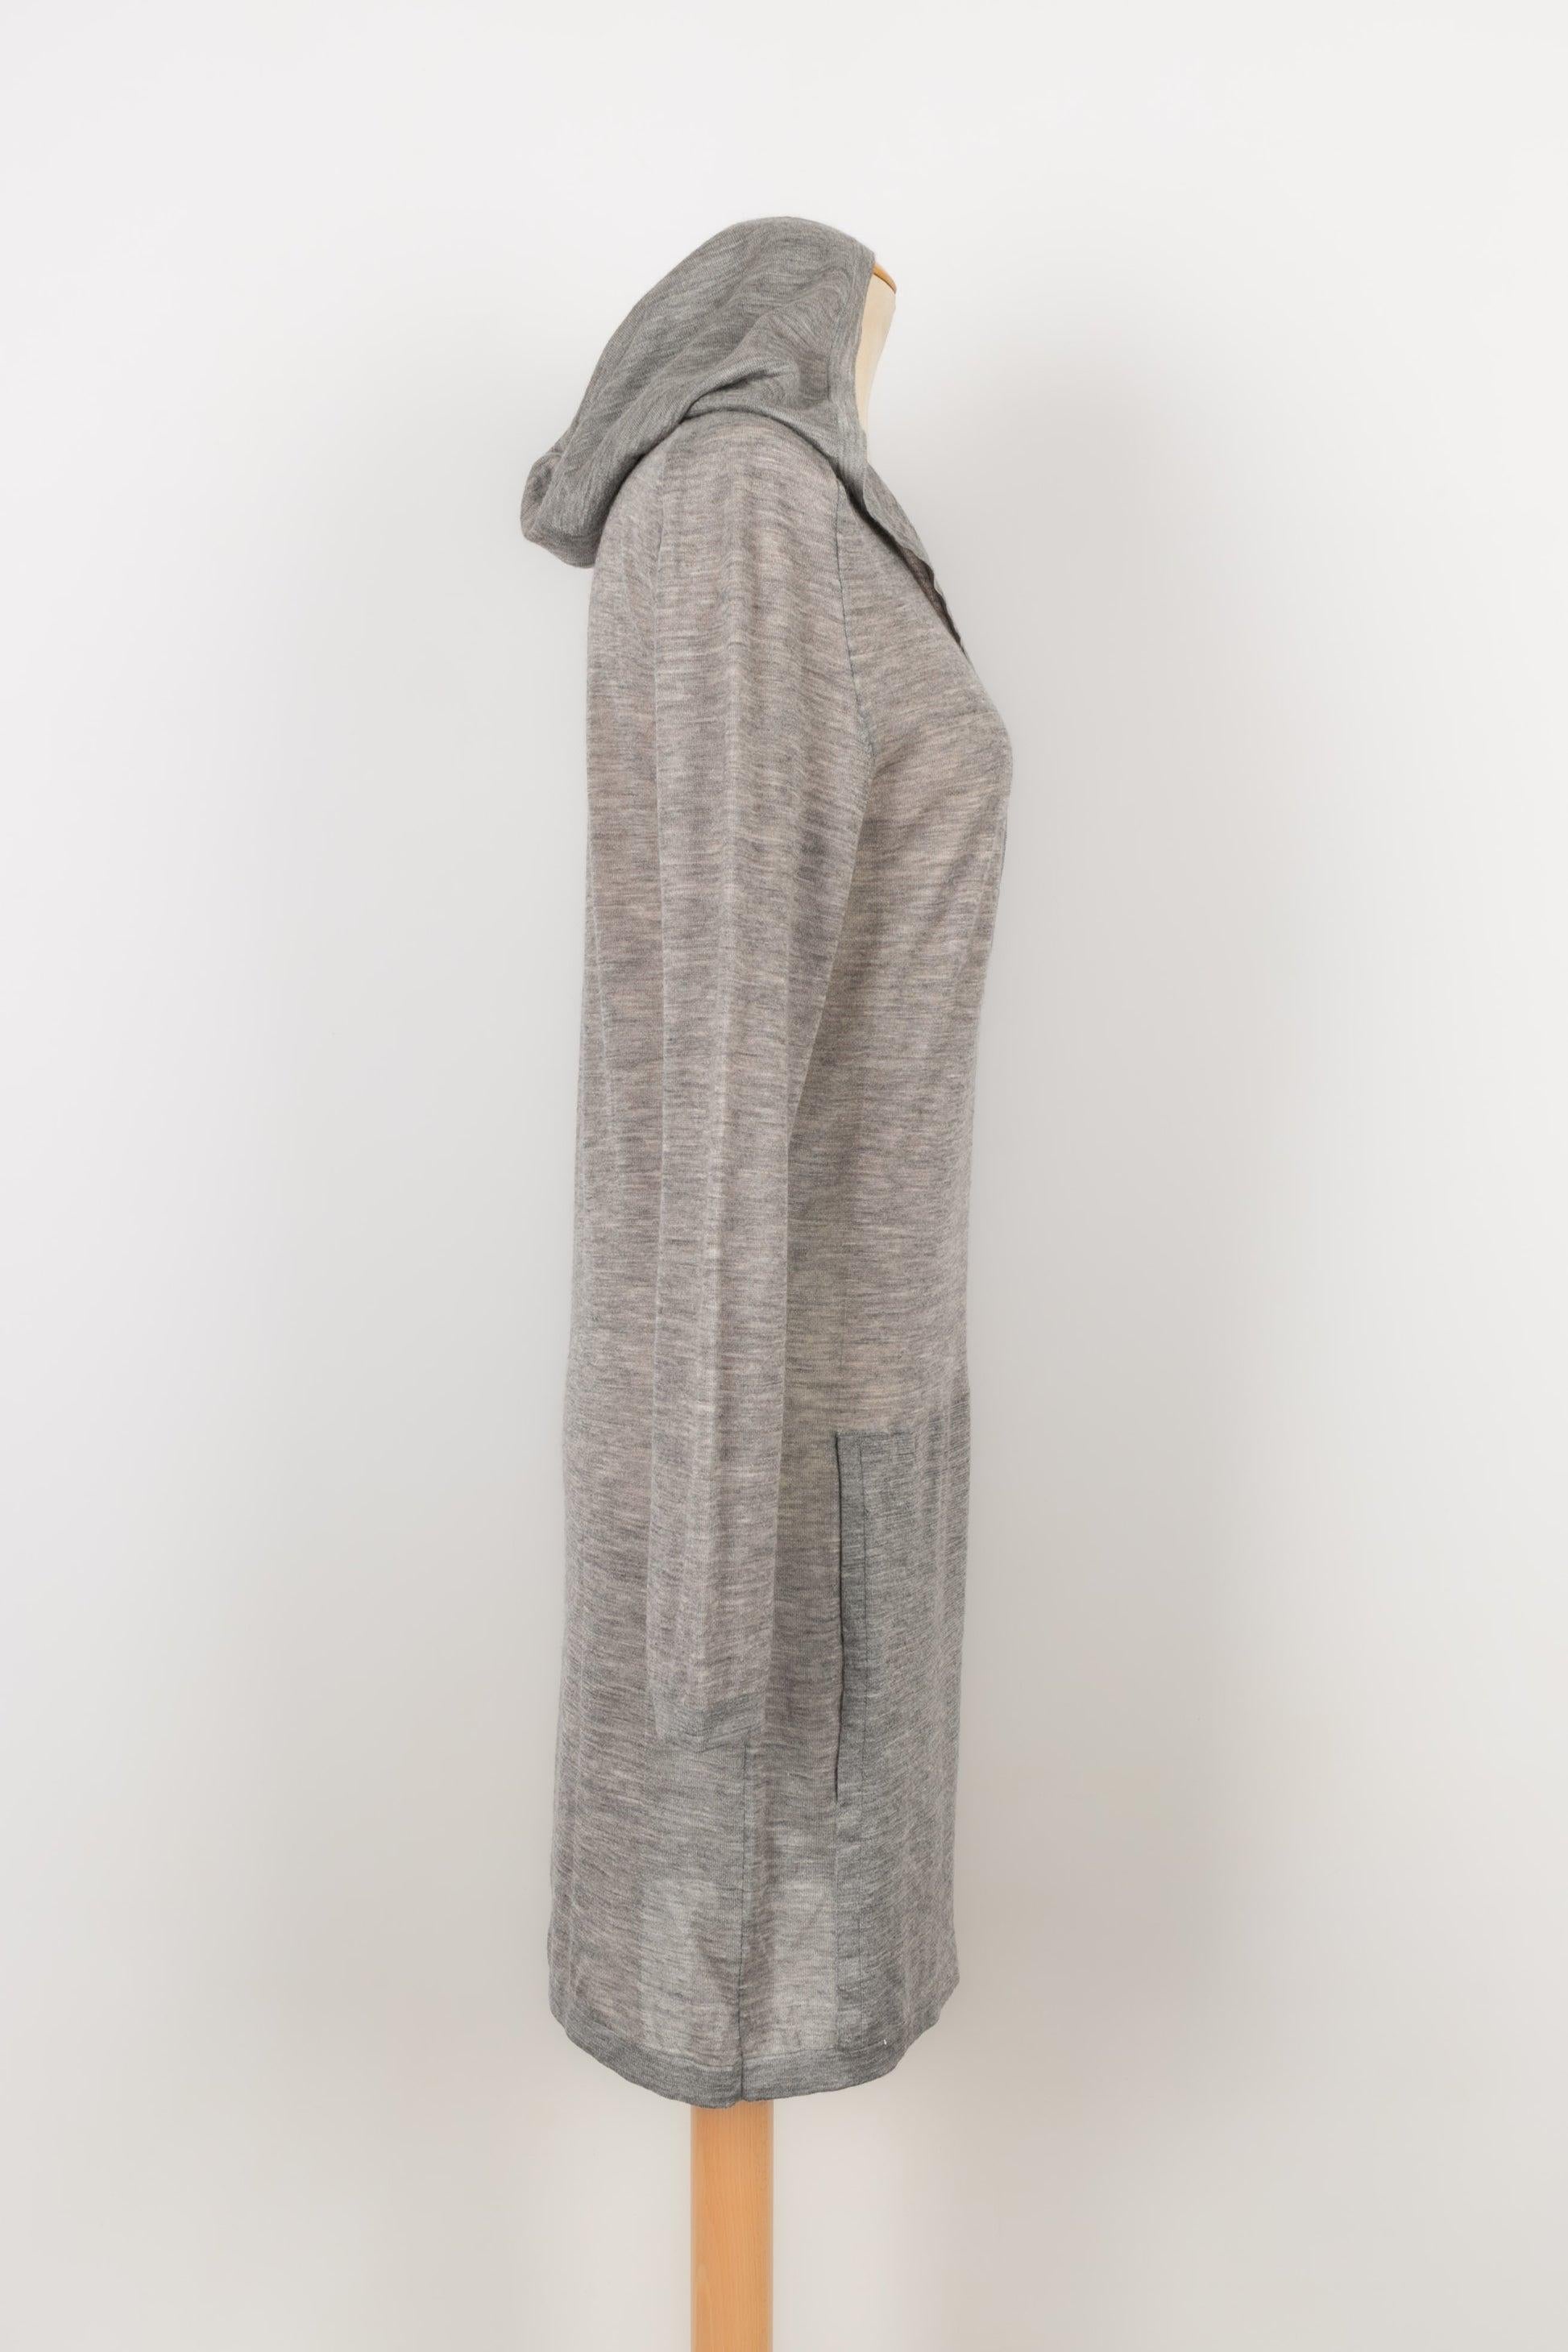 Chanel - Graues Pulloverkleid mit Kapuze aus Kaschmir. Keine Größenangabe, es passt eine 44FR.

Zusätzliche Informationen:
Zustand: Sehr guter Zustand
Abmessungen: Schulterbreite: 50 cm - Brustumfang: 50 cm - Ärmellänge: 60 cm - Länge: 90